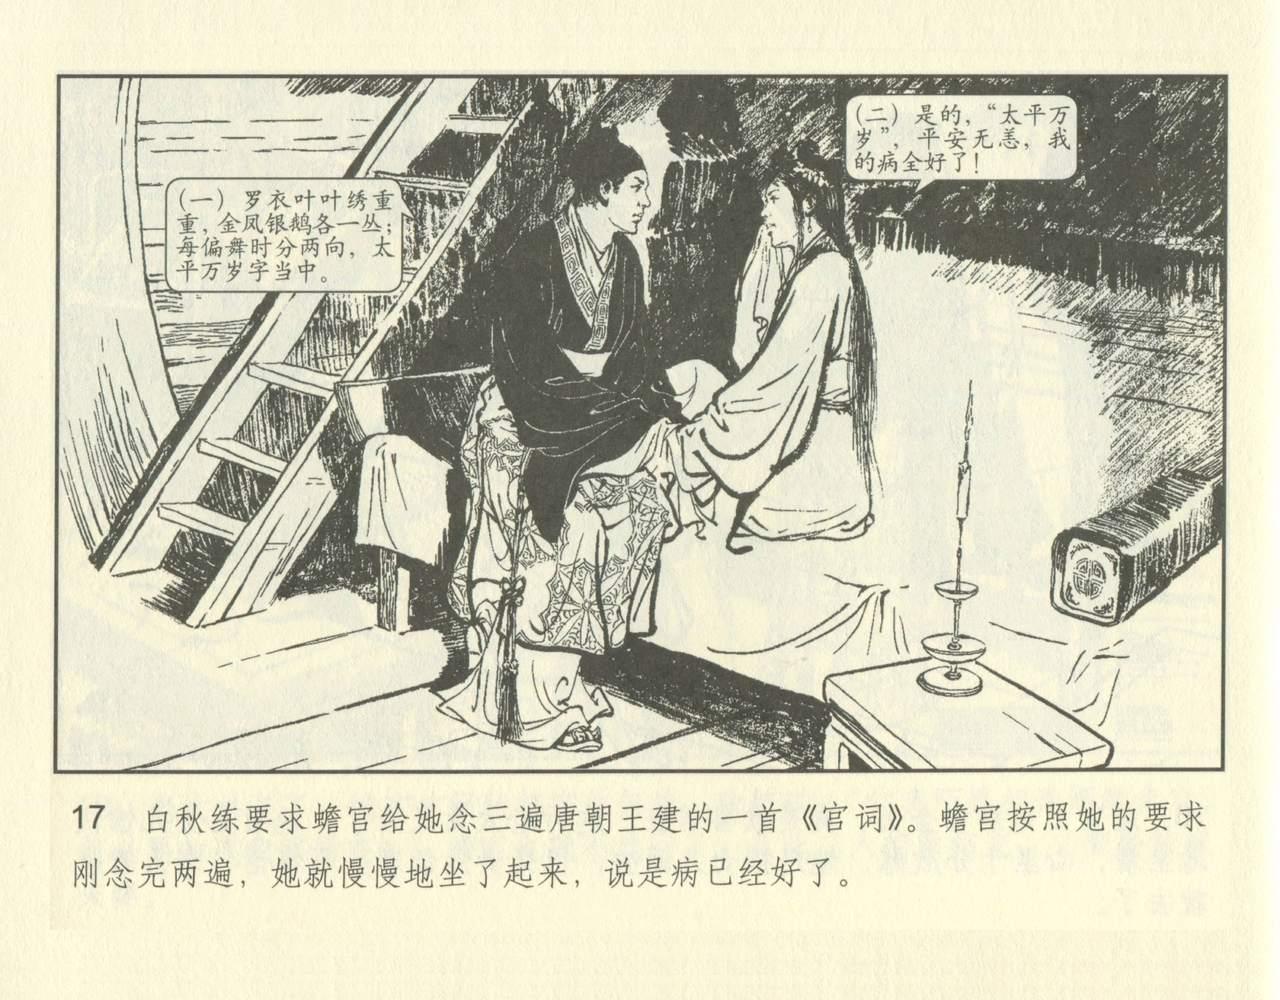 聊斋志异 张玮等绘 天津人民美术出版社 卷二十一 ~ 三十 66